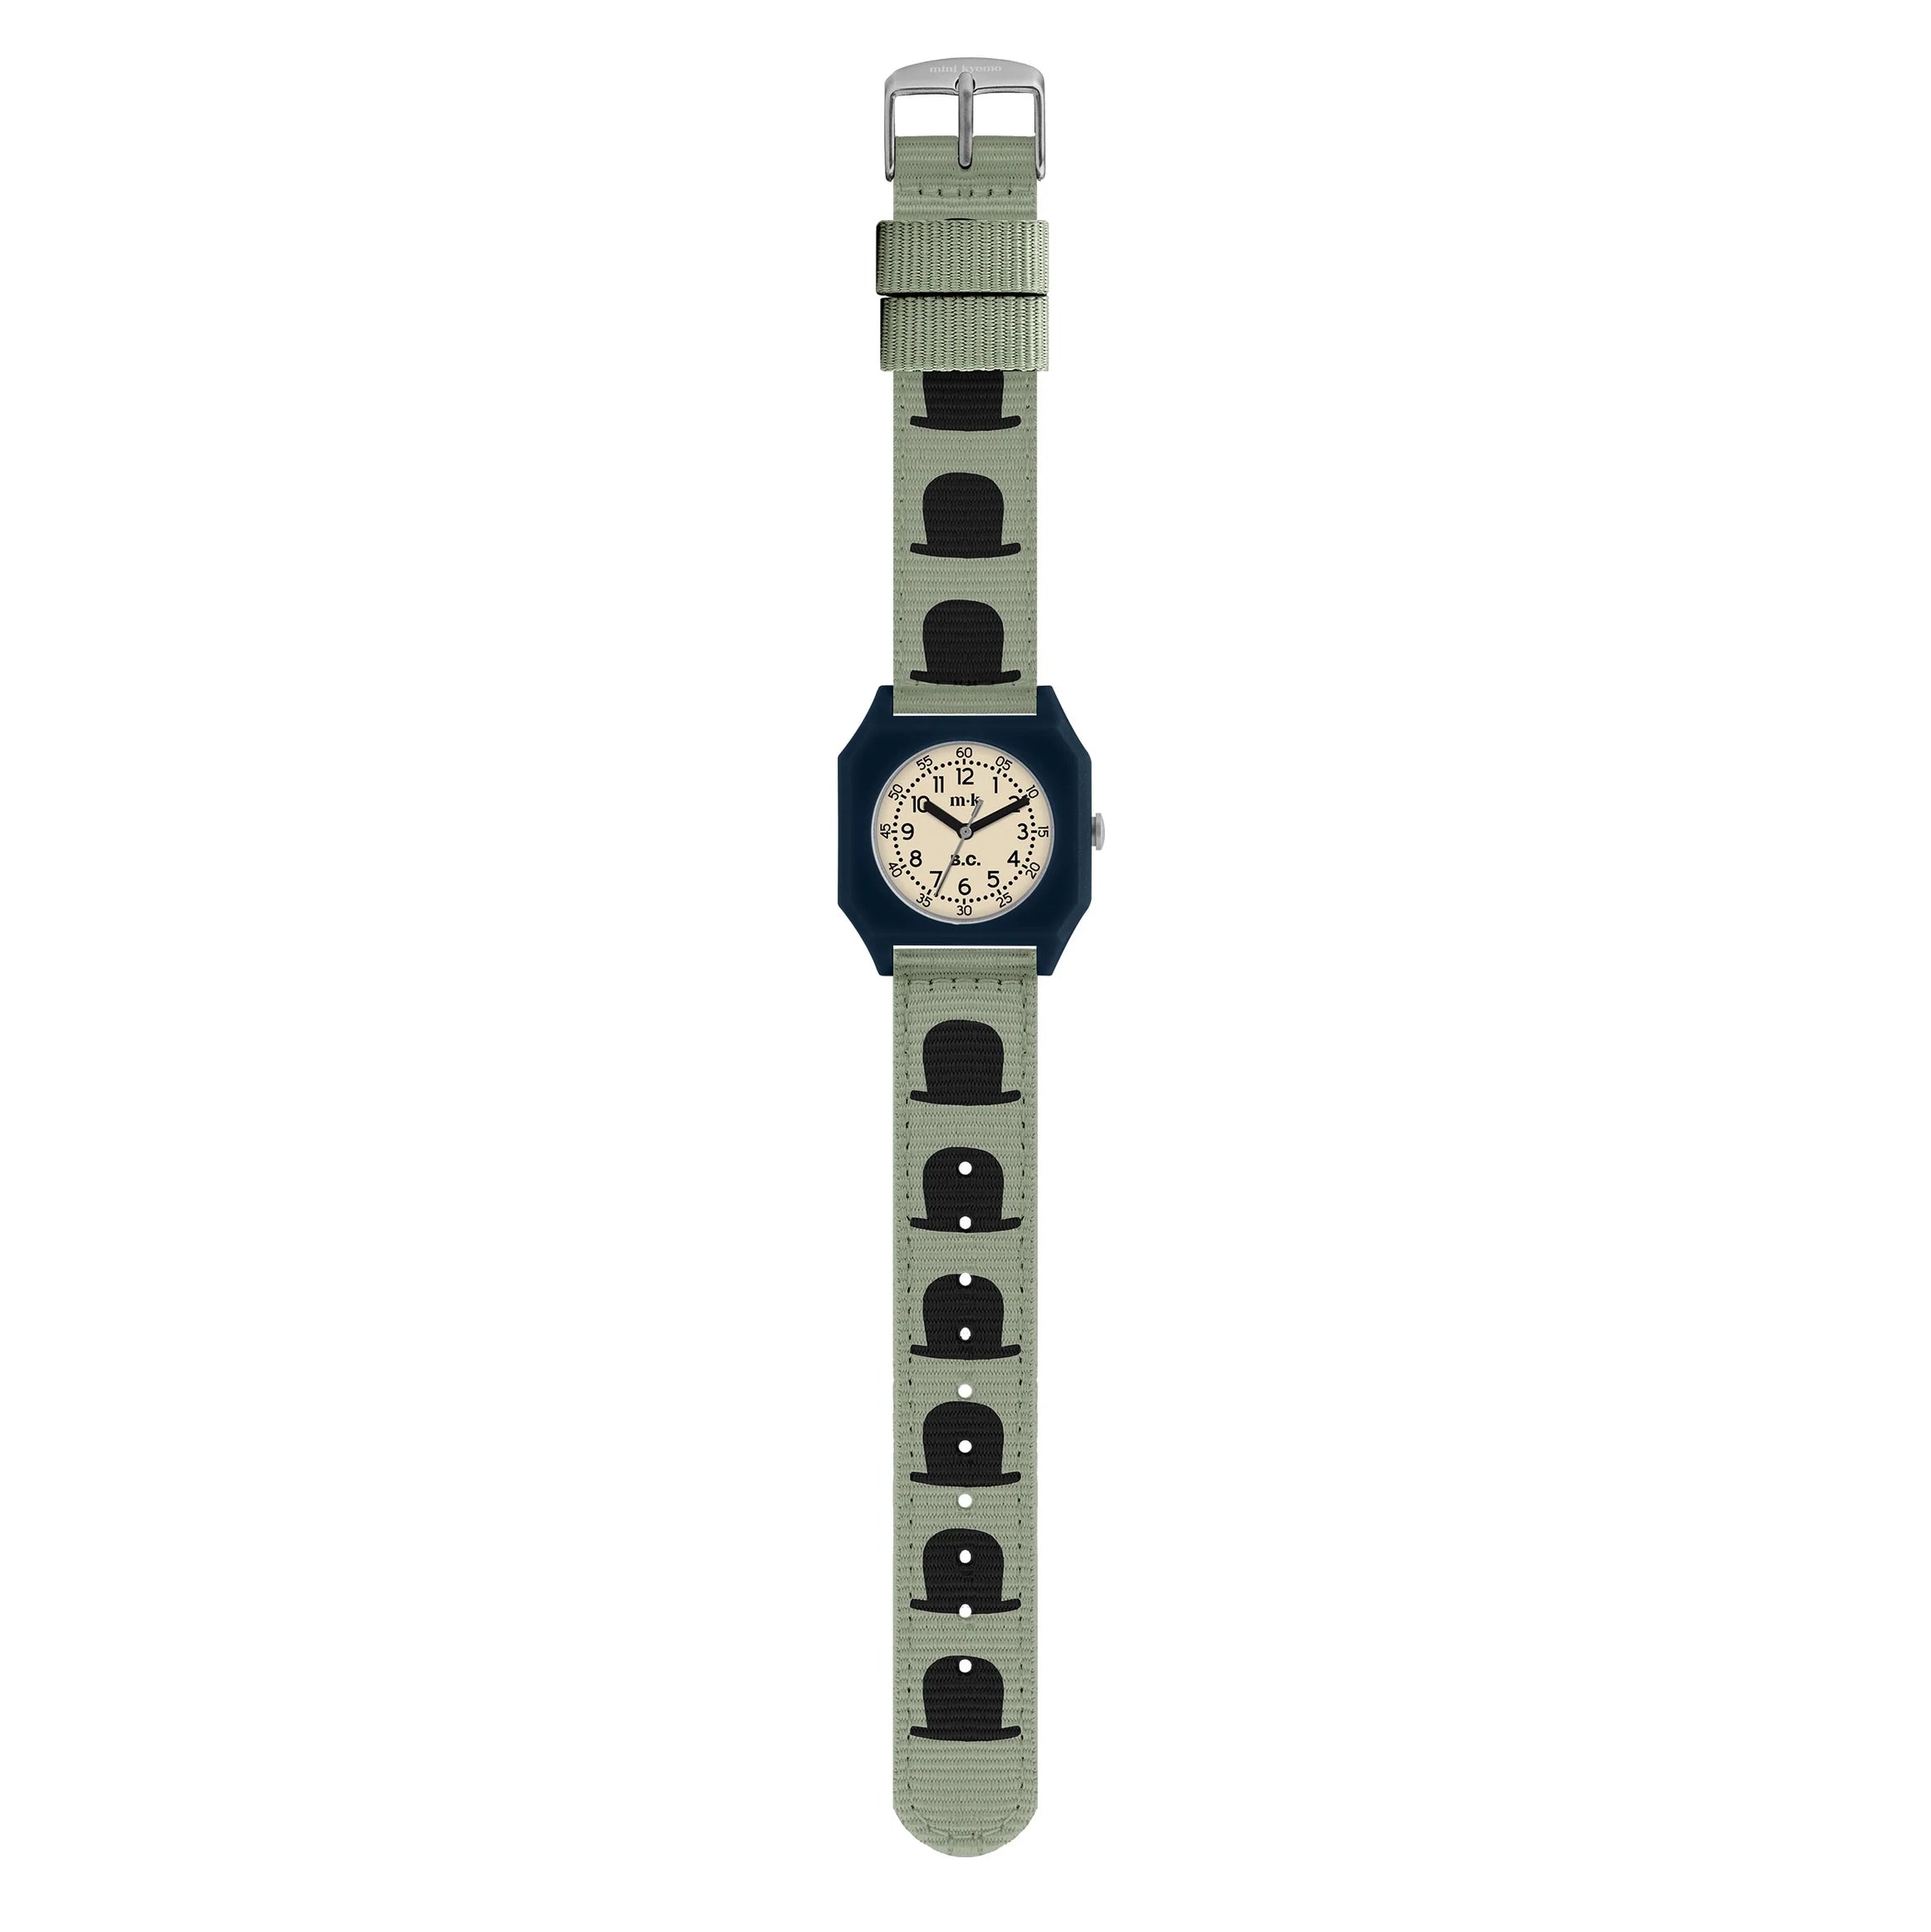 นาฬิกา Poma ราคาถูก ซื้อออนไลน์ที่ - ธ.ค. 2023 | Lazada.co.th